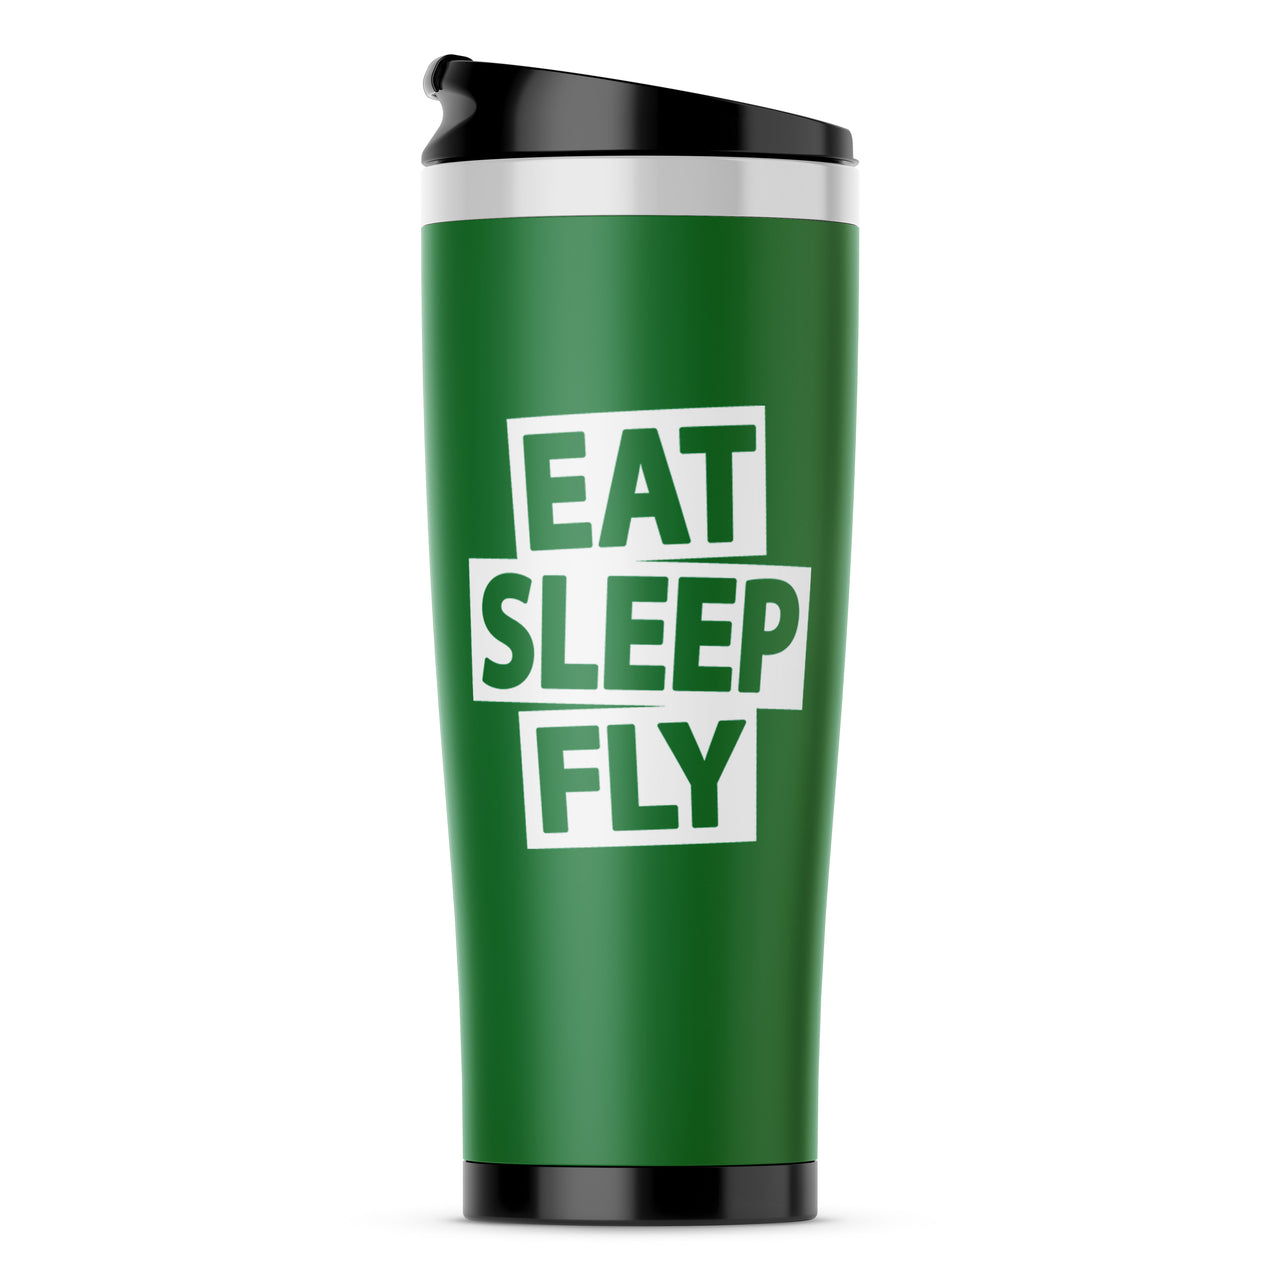 Eat Sleep Fly Designed Travel Mugs